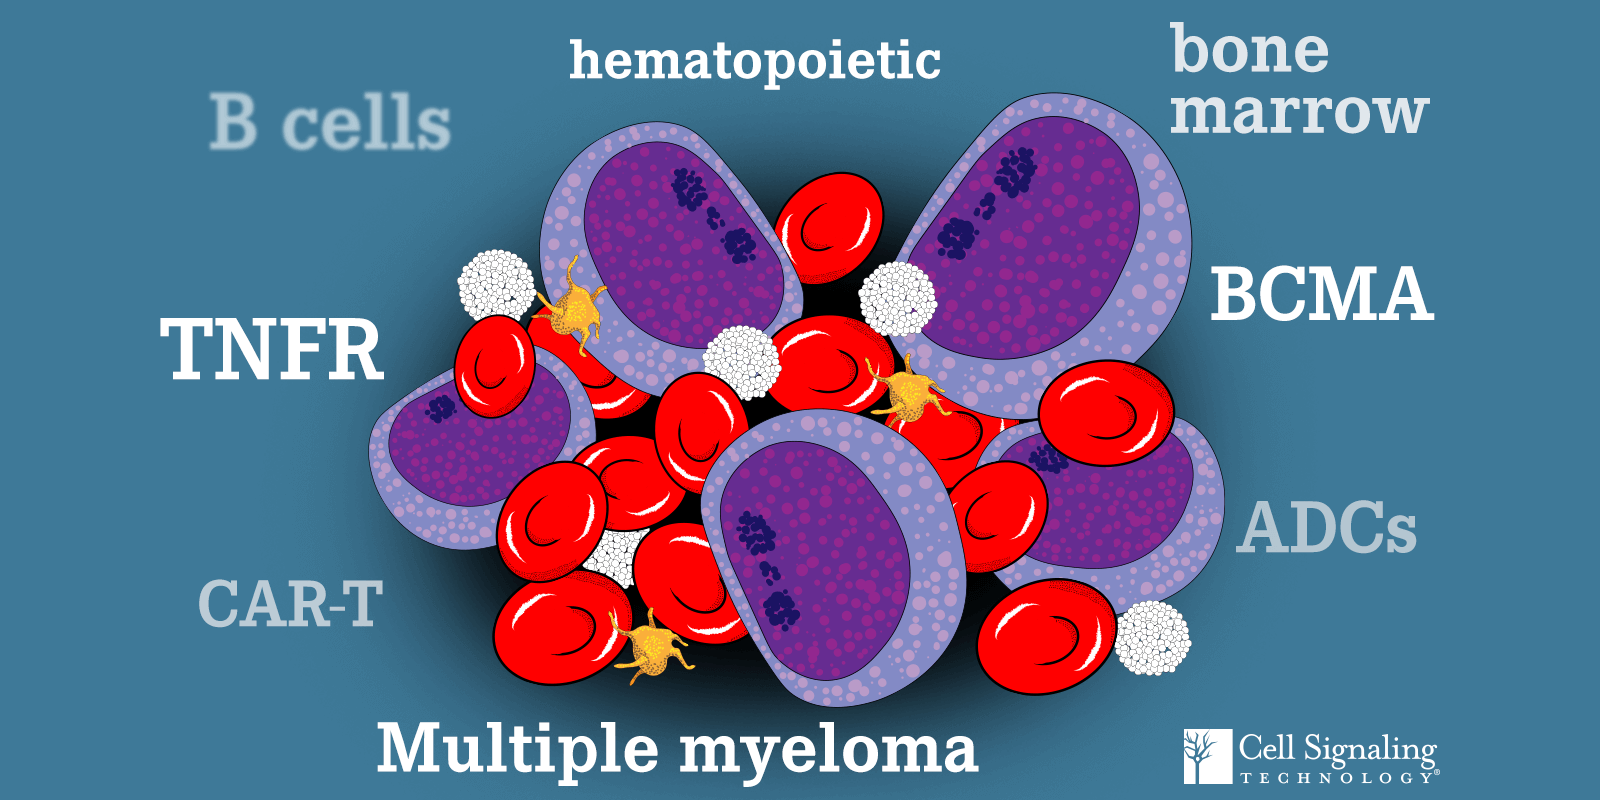 B Cells, TNFR, CAR-T, hematopoietic, bone marrow, BCMA, ADCs, Multiple myeloma